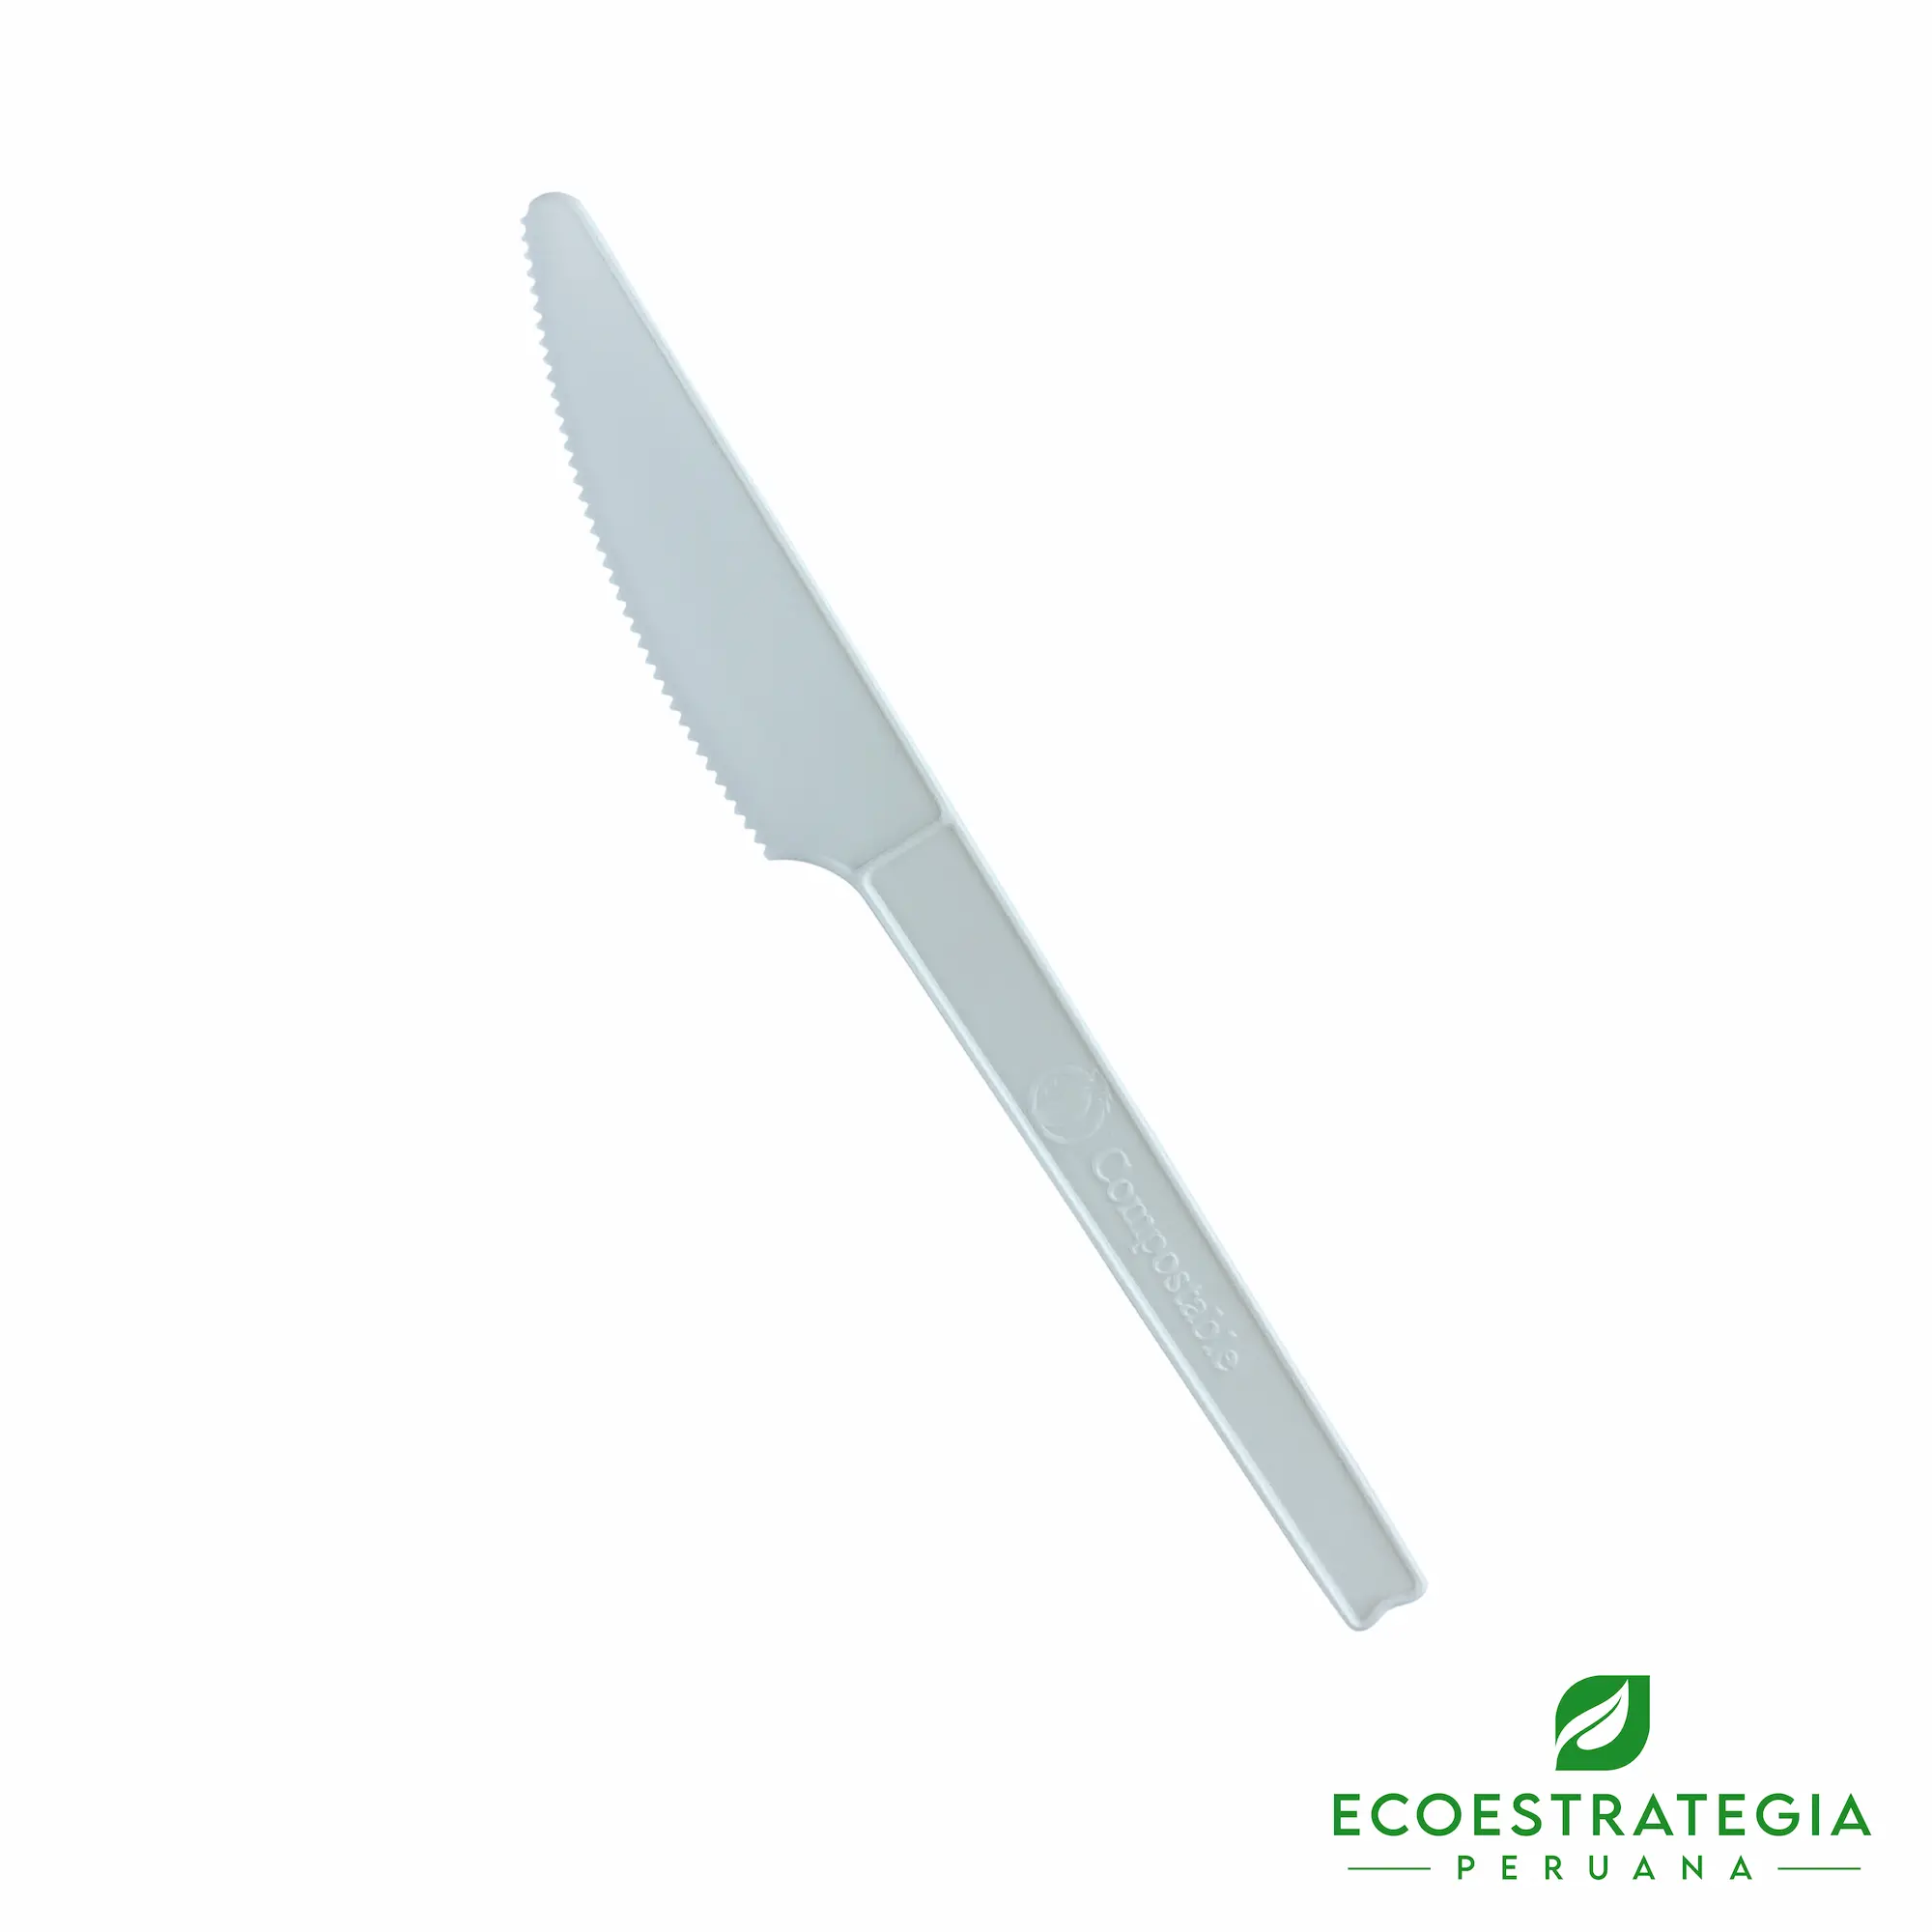 Este cuchillo biodegradable de 15cm esta hecho de fecula de maíz. Cubierto descartable resistente a altas temperaturas, cotiza tenedores y cuchillos ecológicos